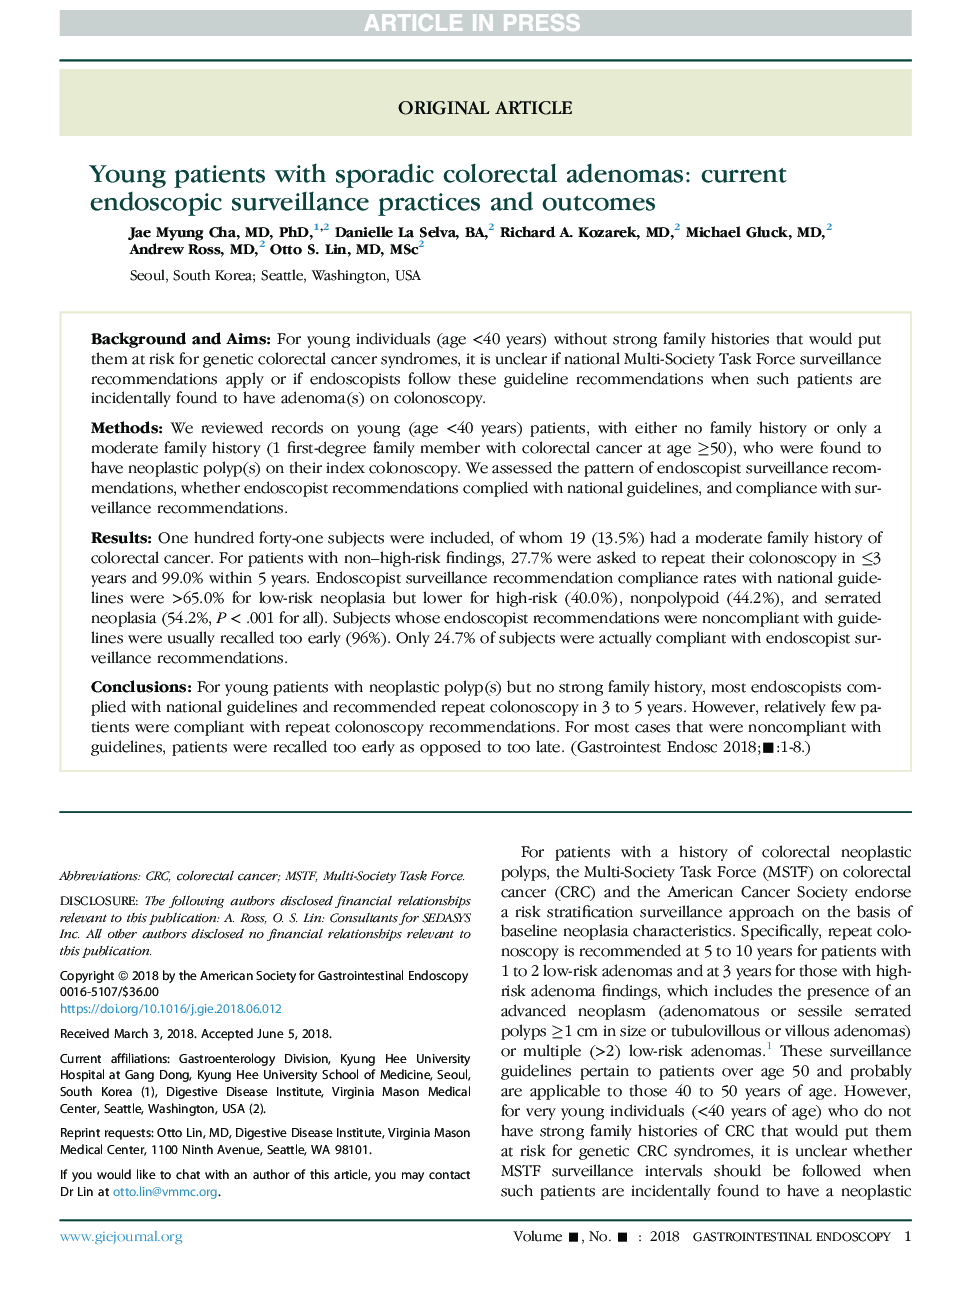 بیماران جوان مبتلا به آدنوم های کولورکتال پراکنده: عملکردهای نظارت بر آندوسکوپی فعلی و نتایج